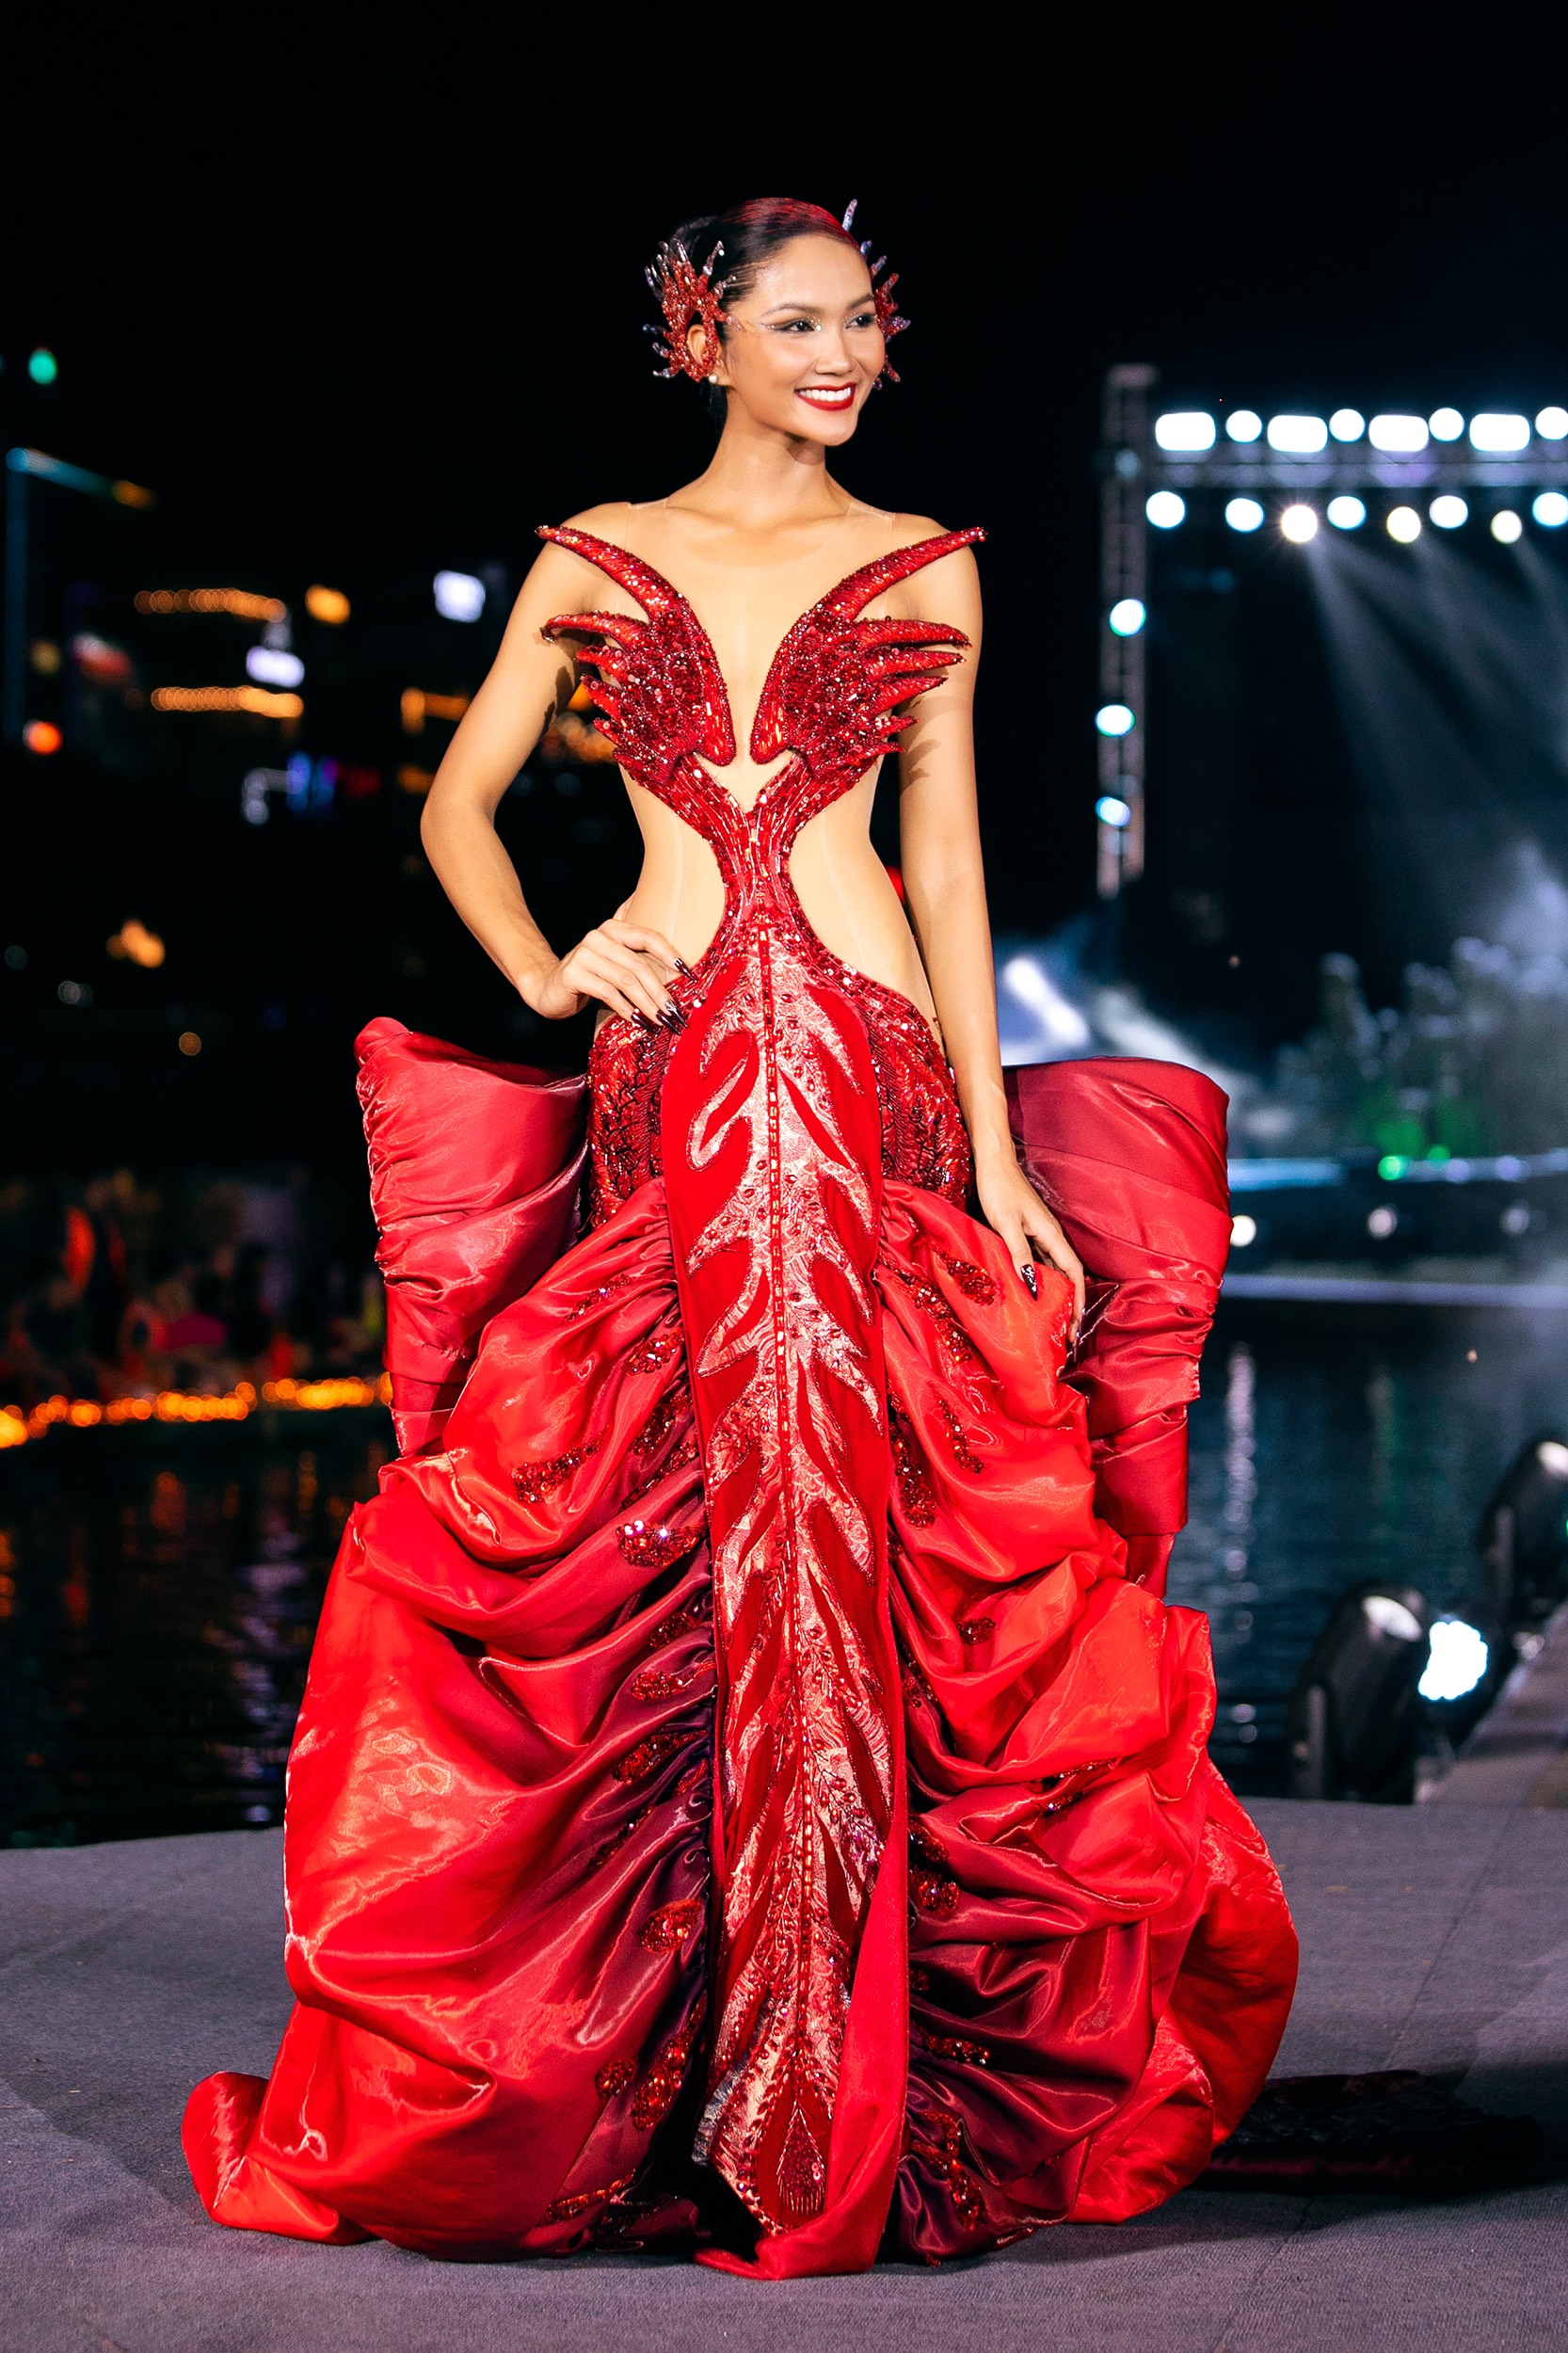 Hoa hậu H’Hen Niê hóa Phượng hoàng lửa trên sàn diễn thời trang - ảnh 2